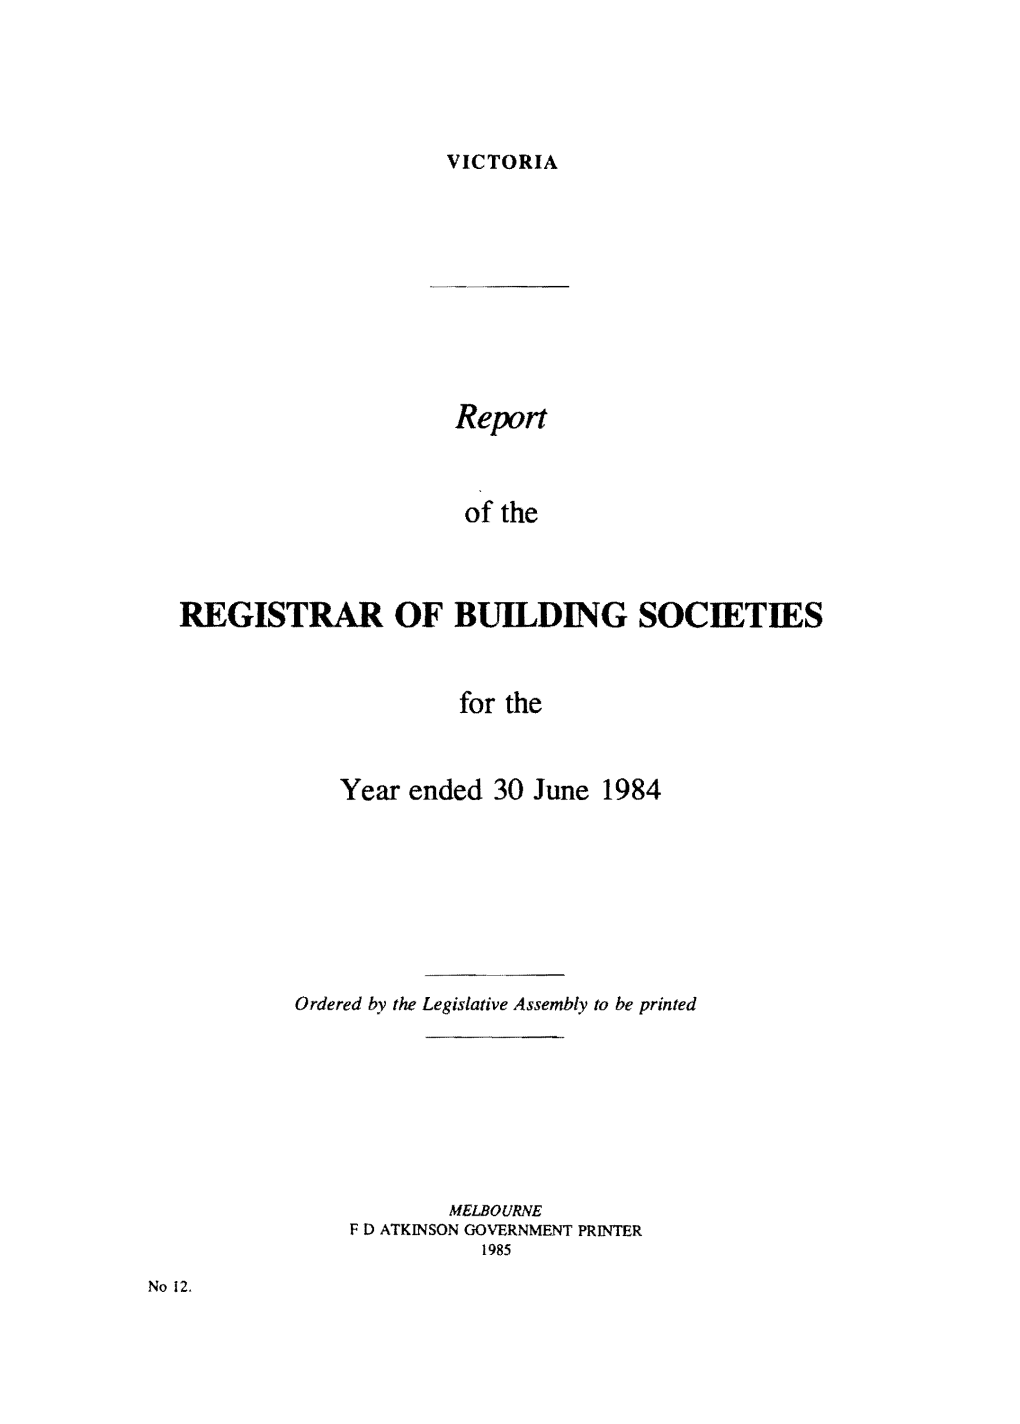 REGISTRAR of Bltilding SOCIETIES